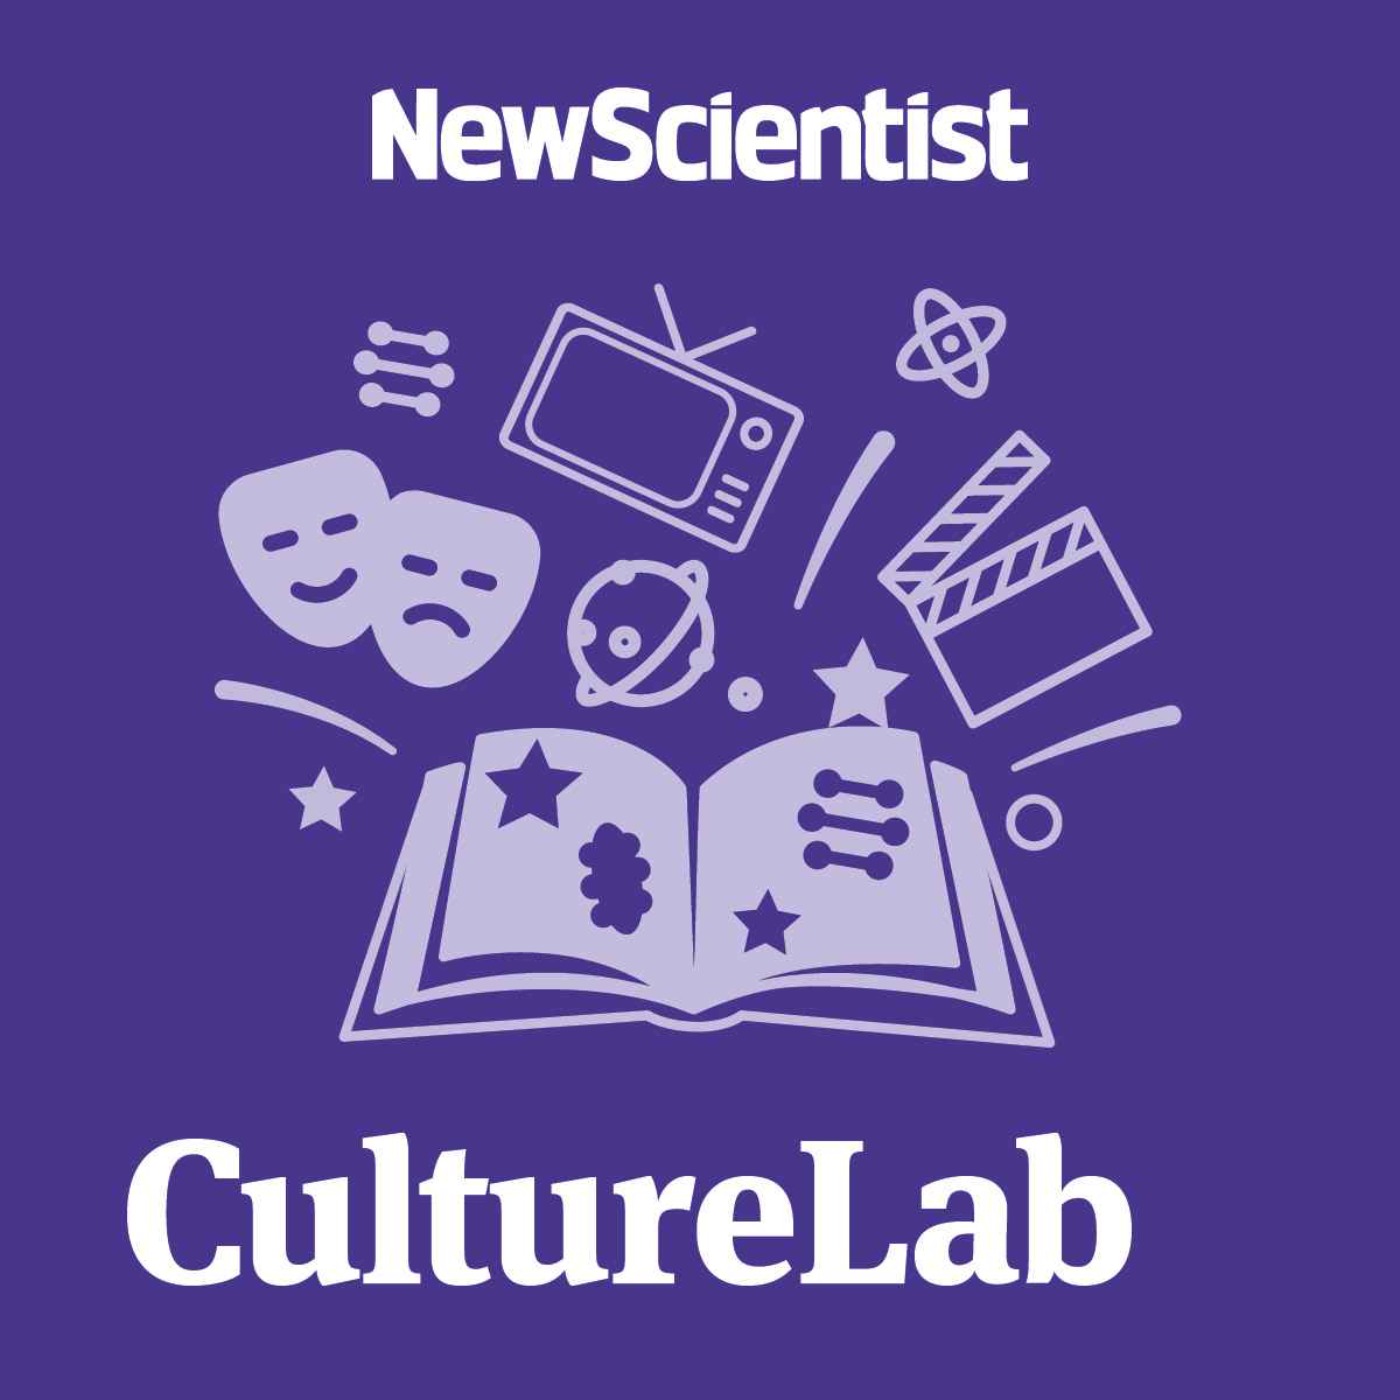 New Scientist CultureLab Image